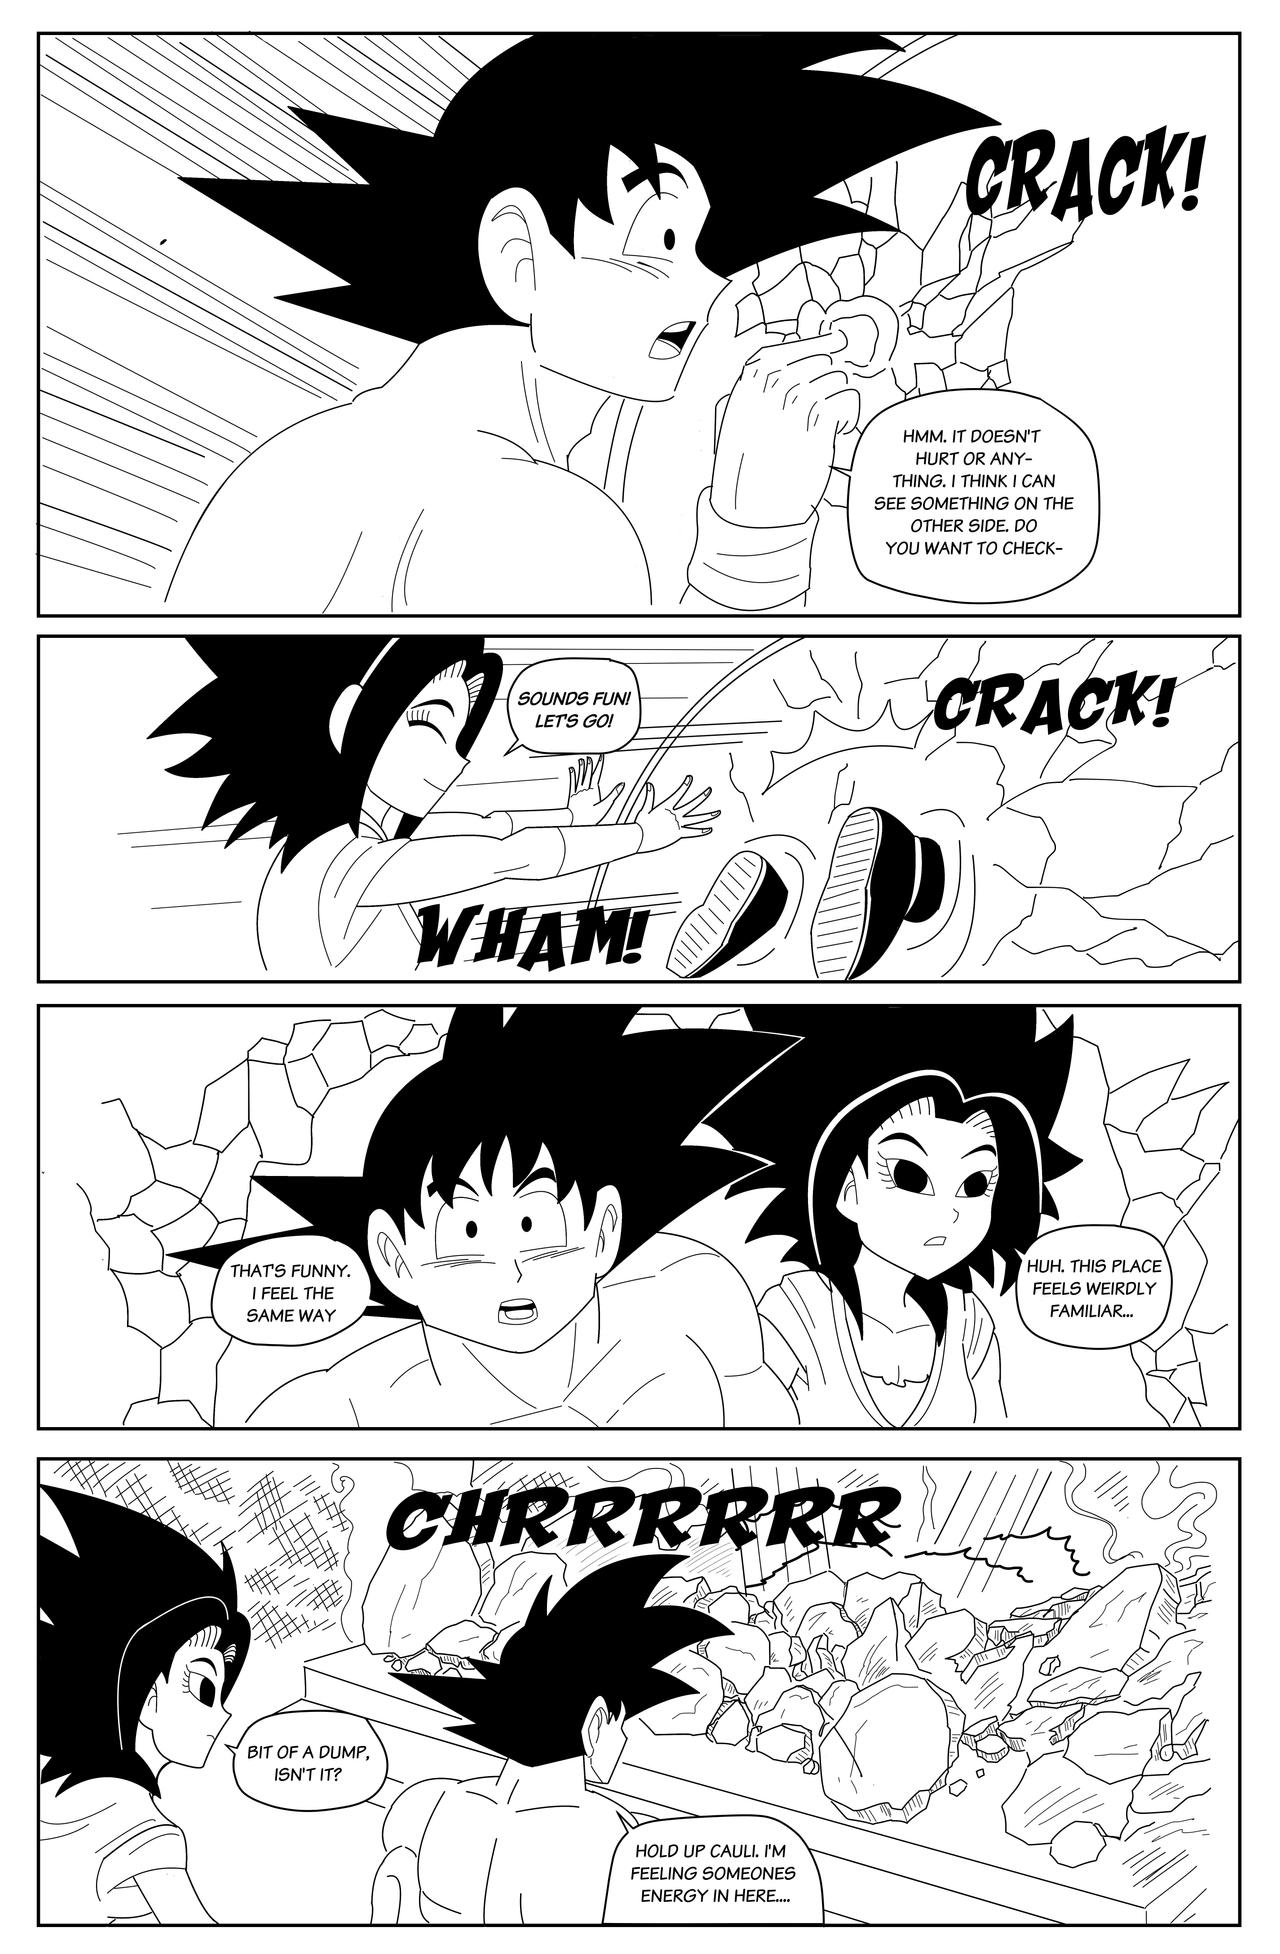 Dragon Ball Super: Bebi Arc Episode 1: Page 5 by KevinBeaver on DeviantArt